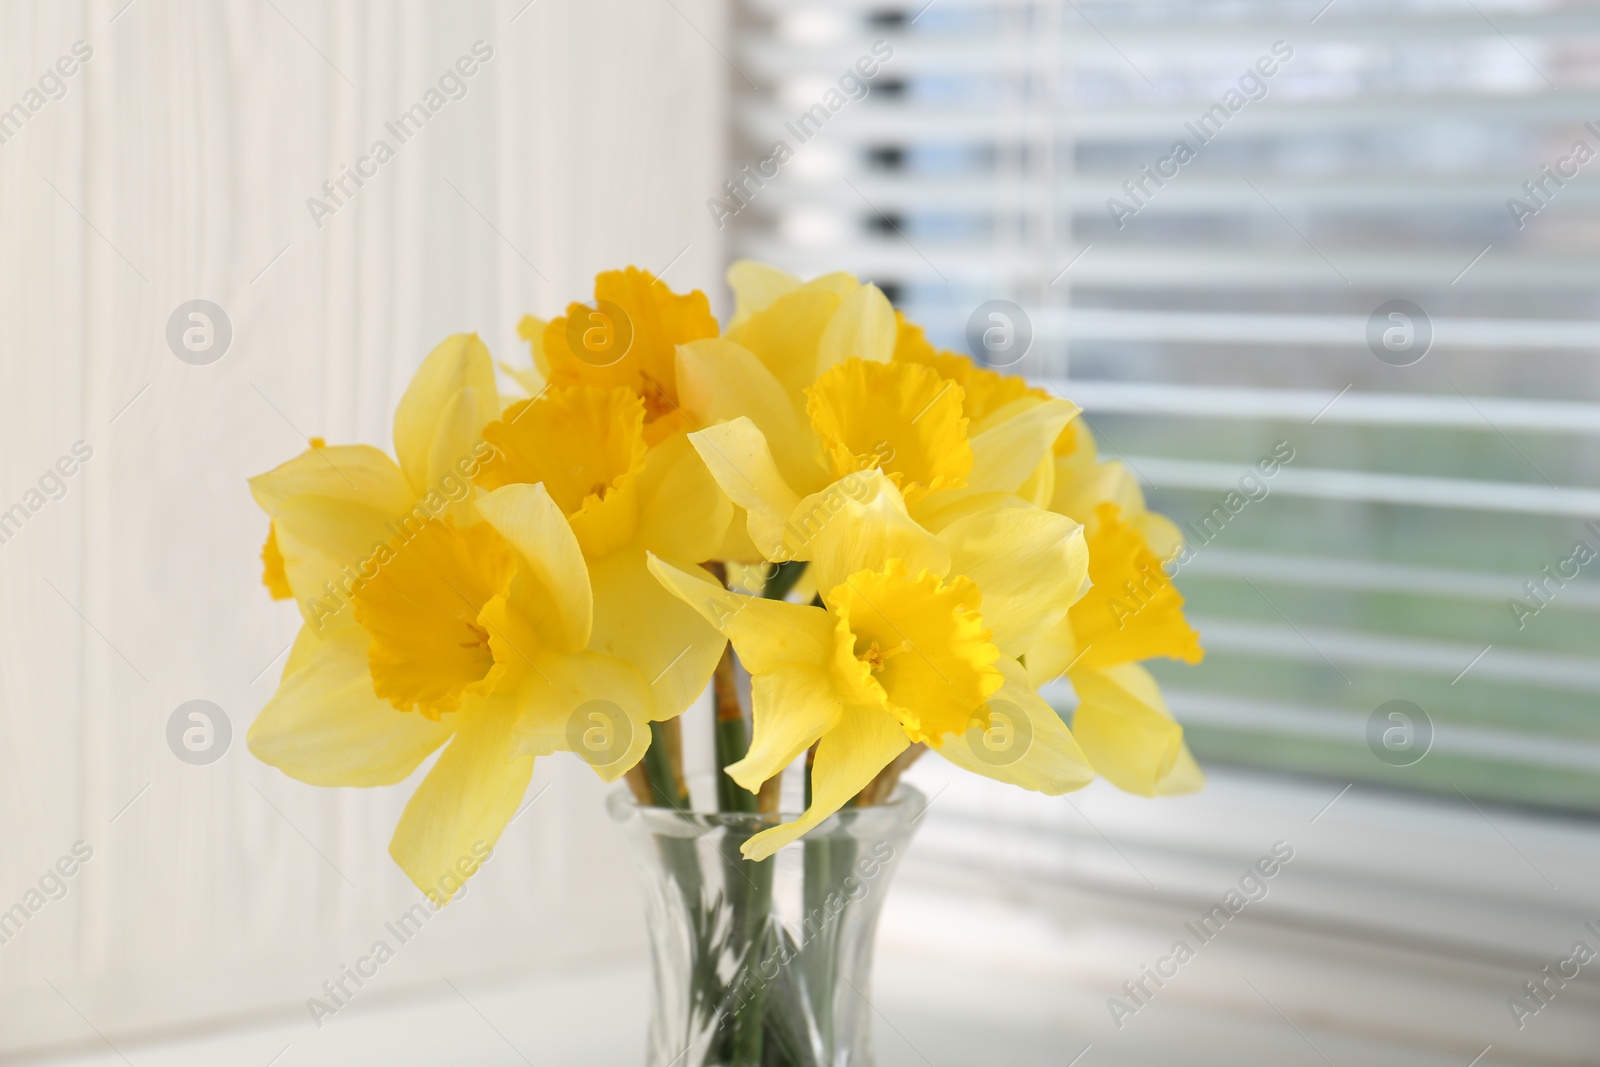 Photo of Beautiful yellow daffodils in vase near window, closeup view